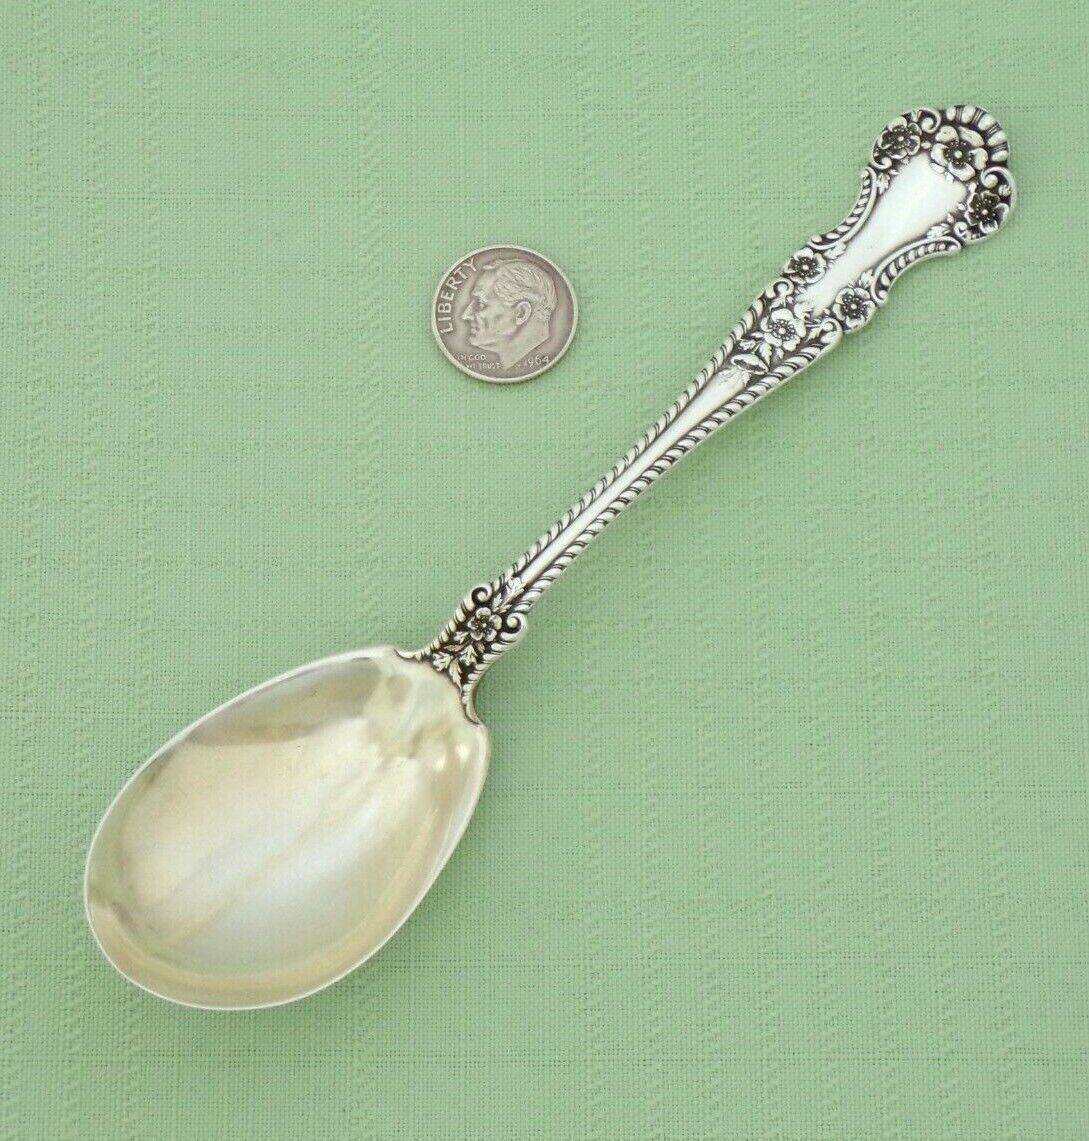 Vintage 1899 GORHAM Sterling Silver CAMBRIDGE Sugar Spoon 5 7/8" Long - NO MONO